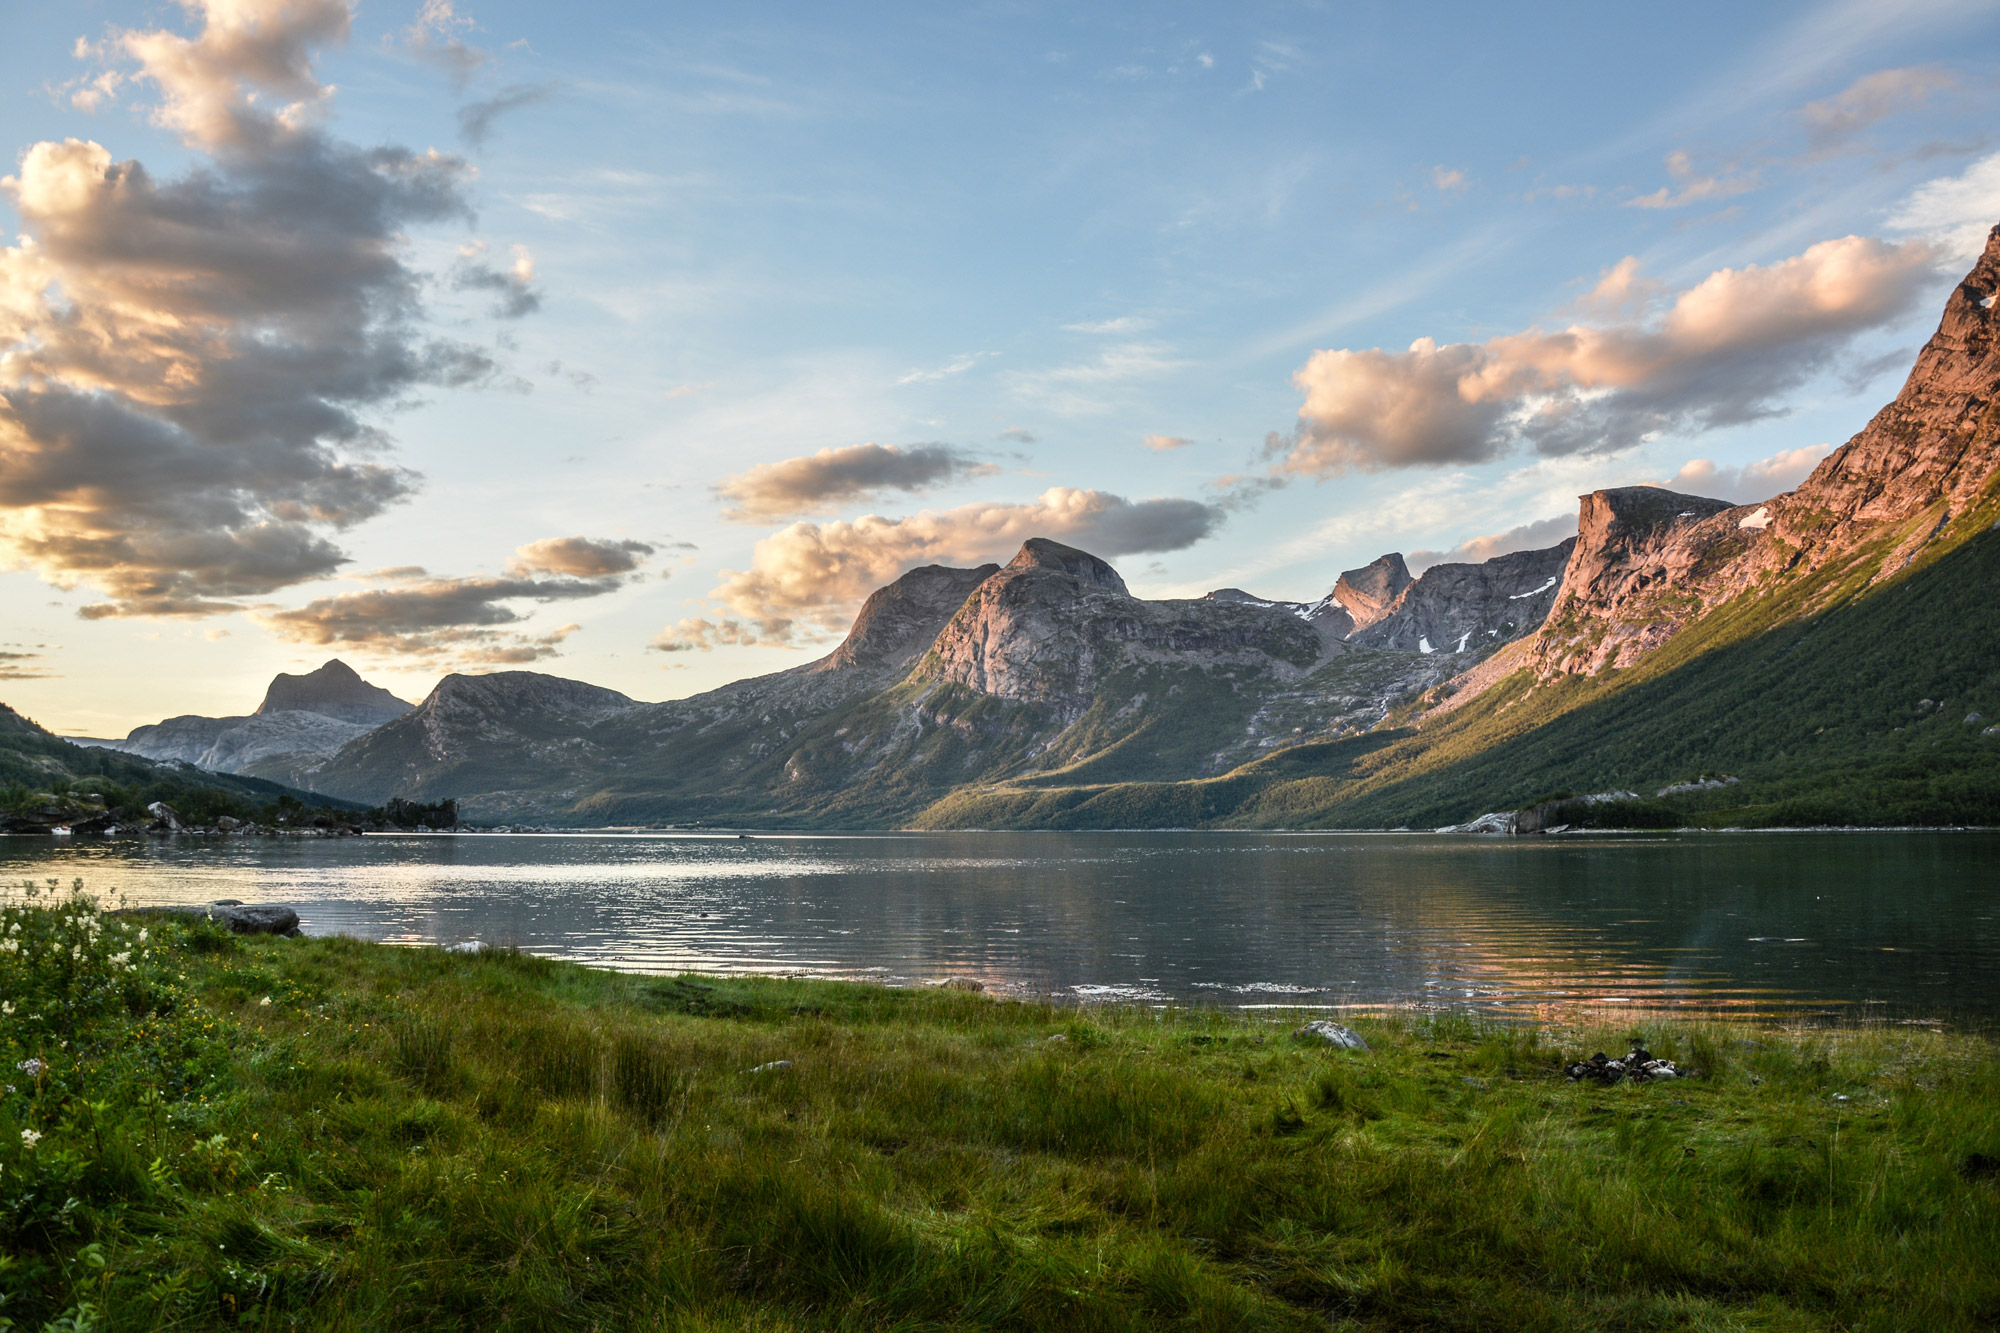 Fietsvakantie tip: verken het prachtige Noorwegen!